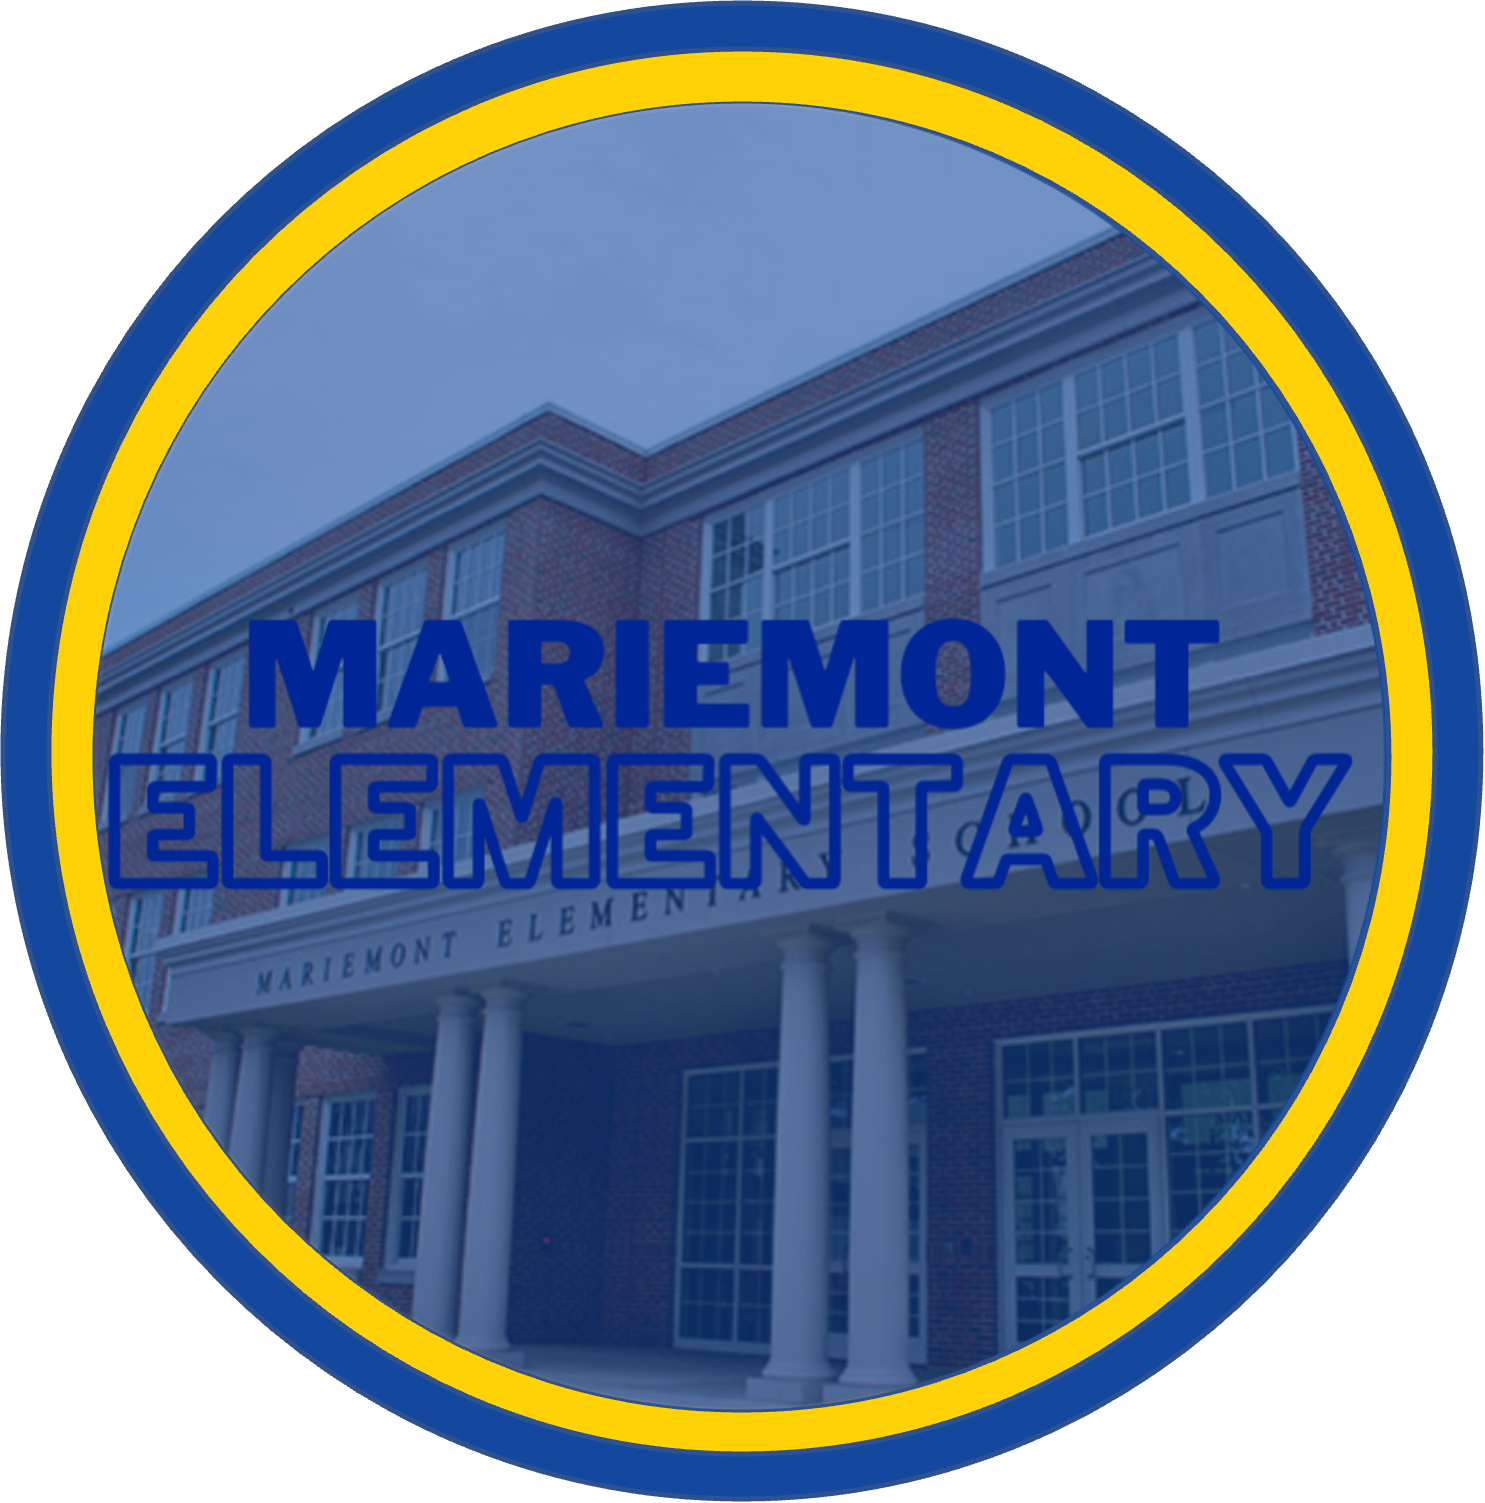 Mariemont Elementary School